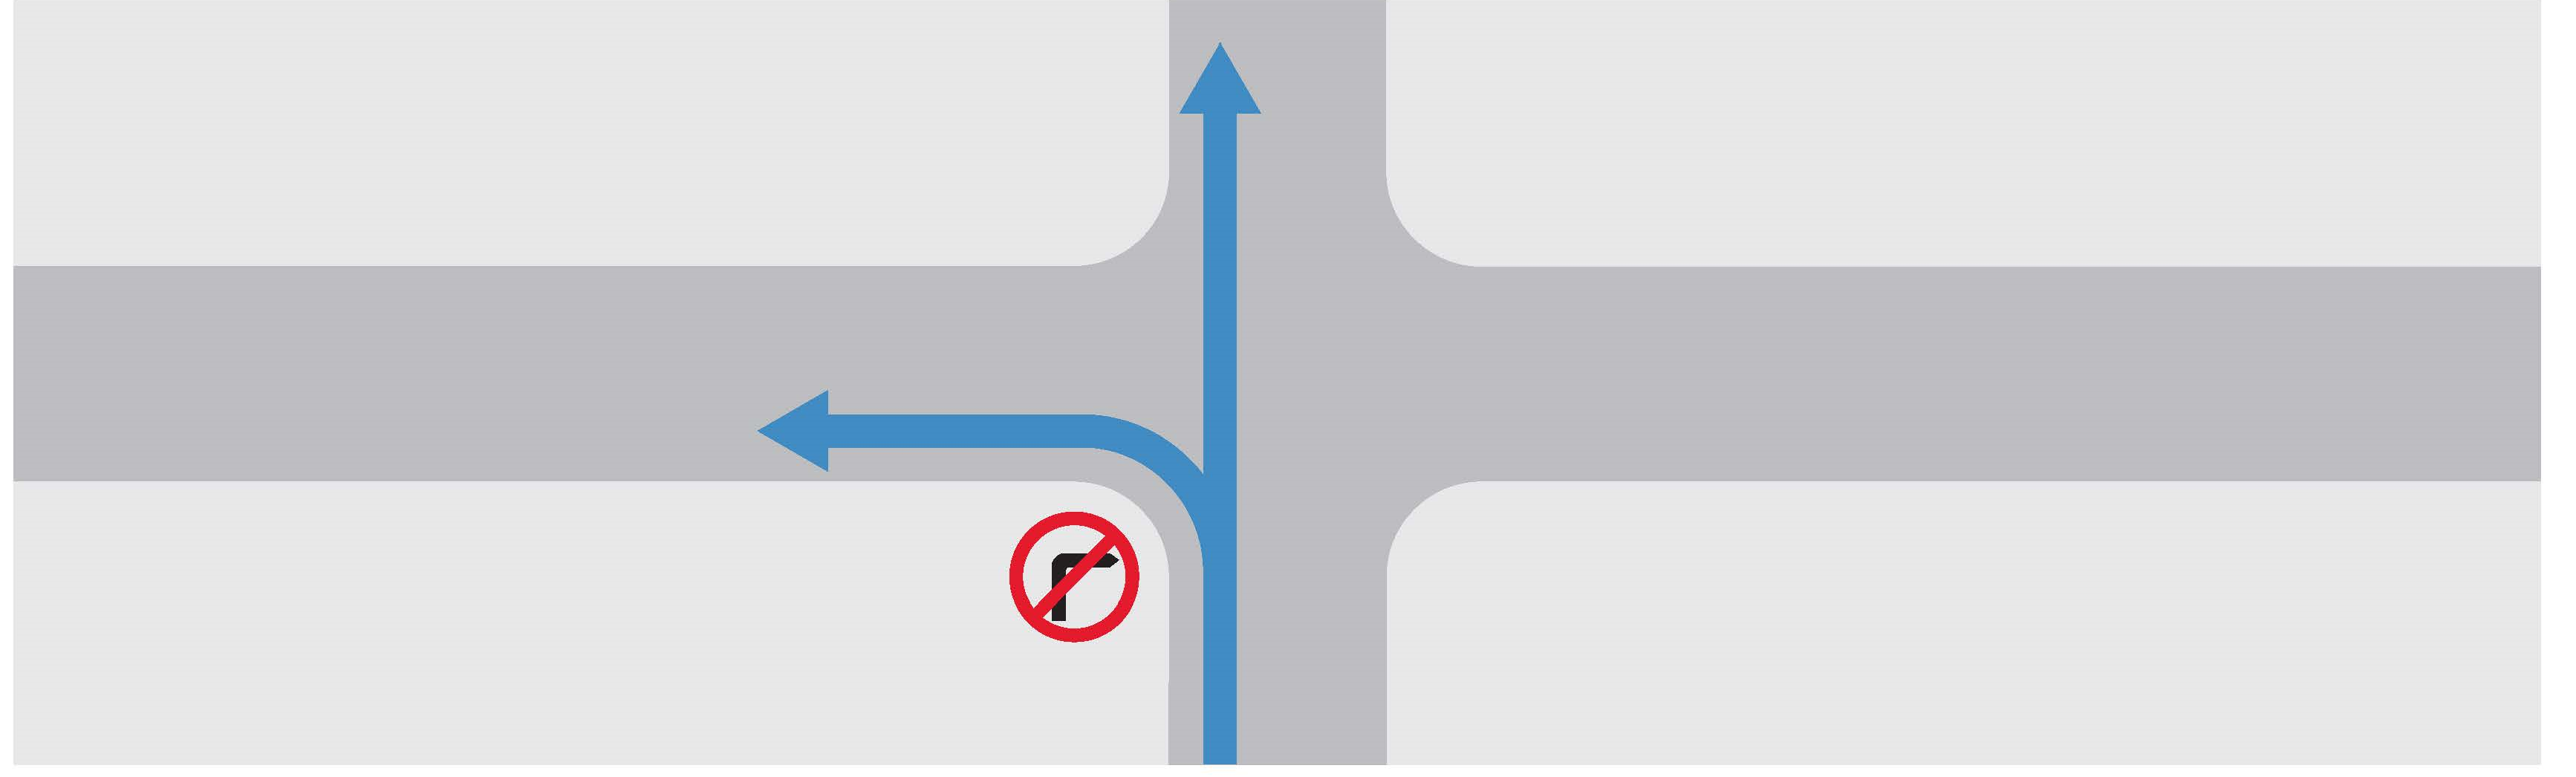 禁止转右的路口示意图